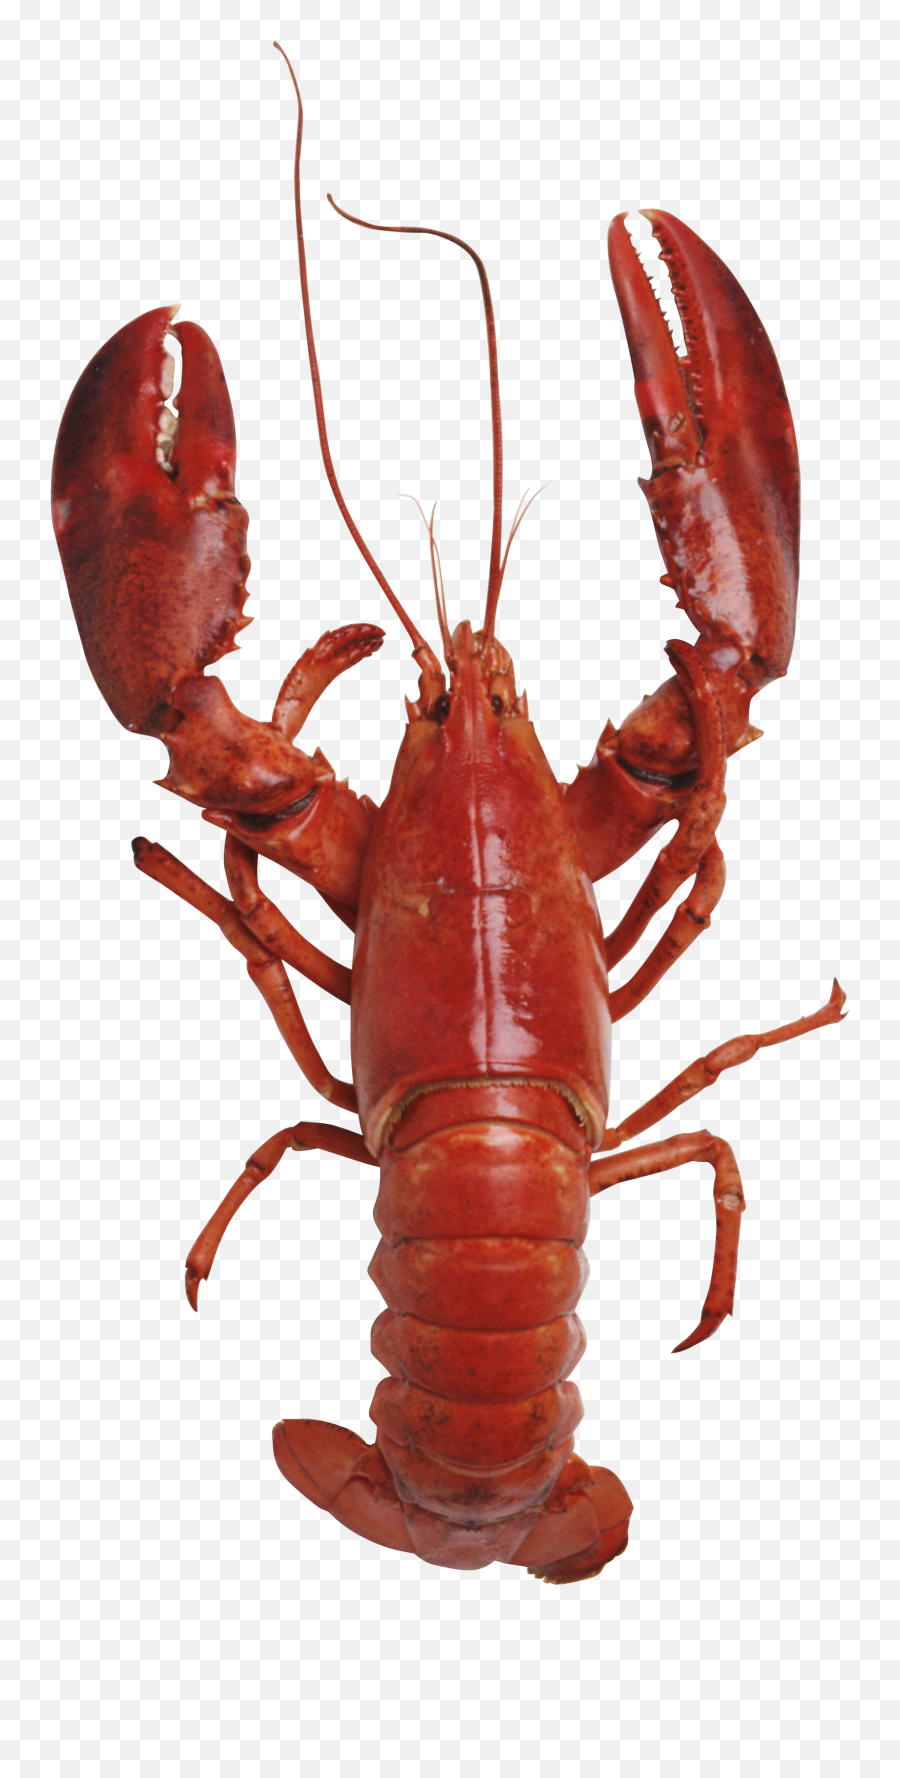 Lobster Clipart Transparent Background - Lobster Transparent Background Emoji,Lobster Emoji